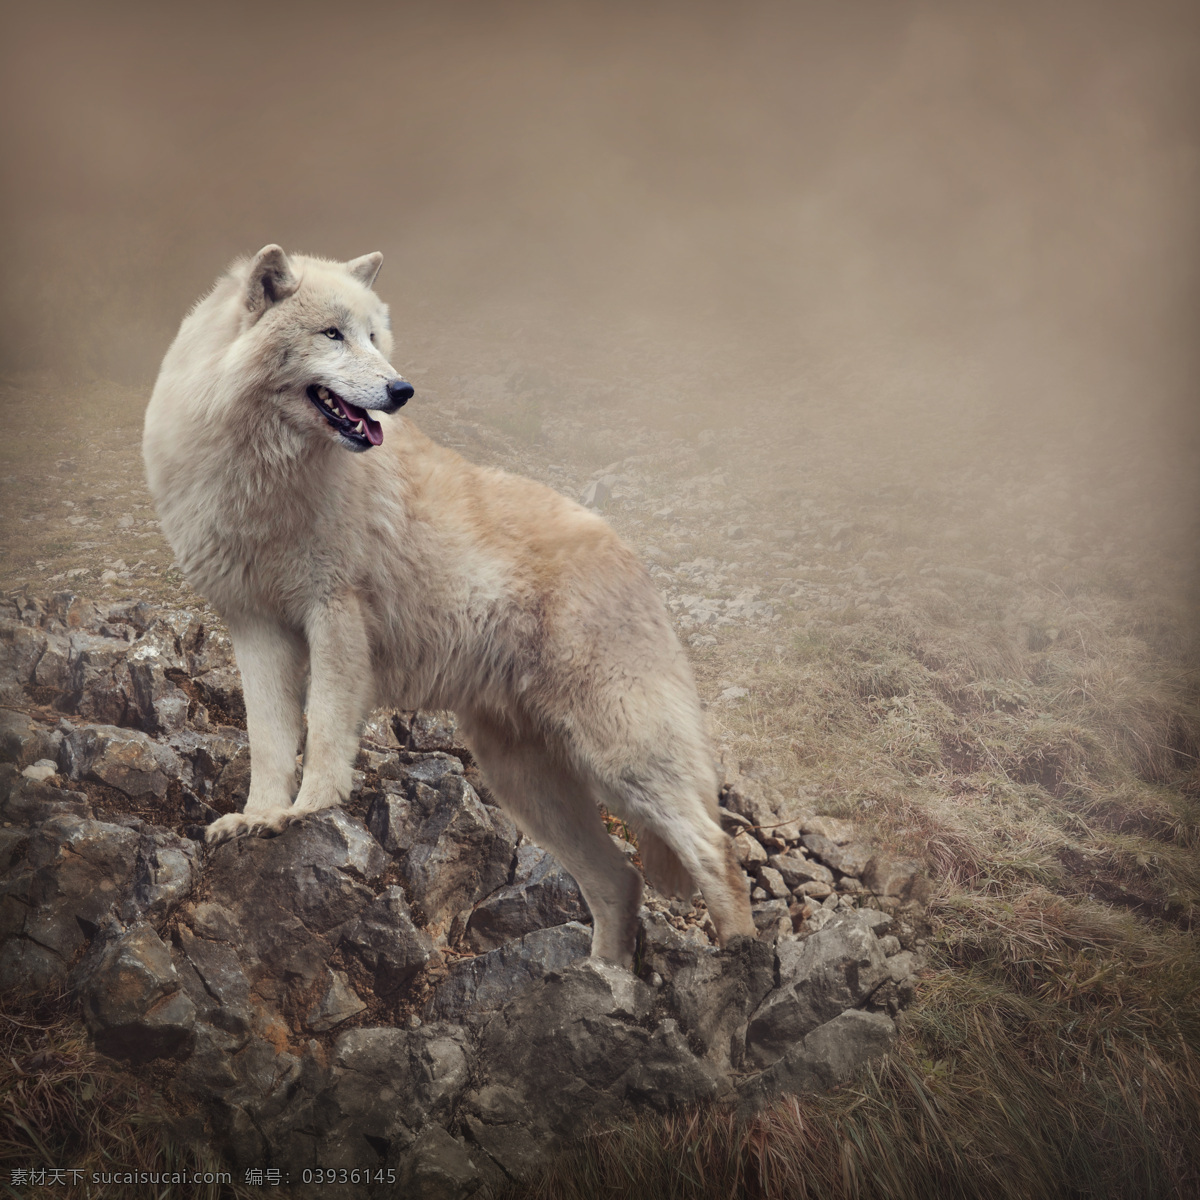 山石 上 狼 动物 陆地动物 野生动物 动物世界 动物摄影 生物世界